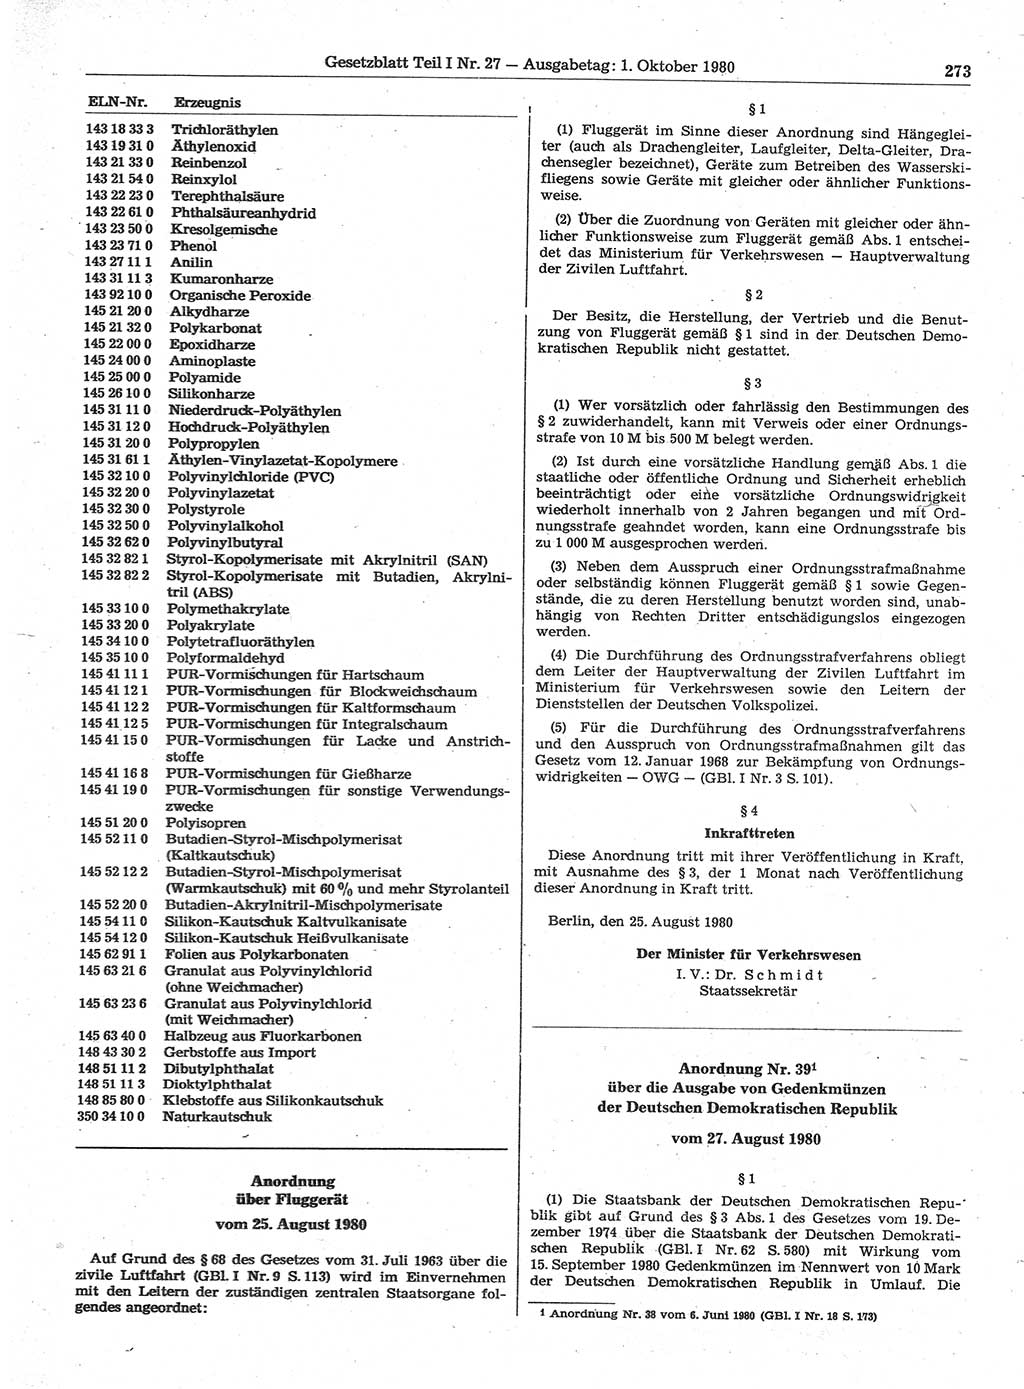 Gesetzblatt (GBl.) der Deutschen Demokratischen Republik (DDR) Teil Ⅰ 1980, Seite 273 (GBl. DDR Ⅰ 1980, S. 273)